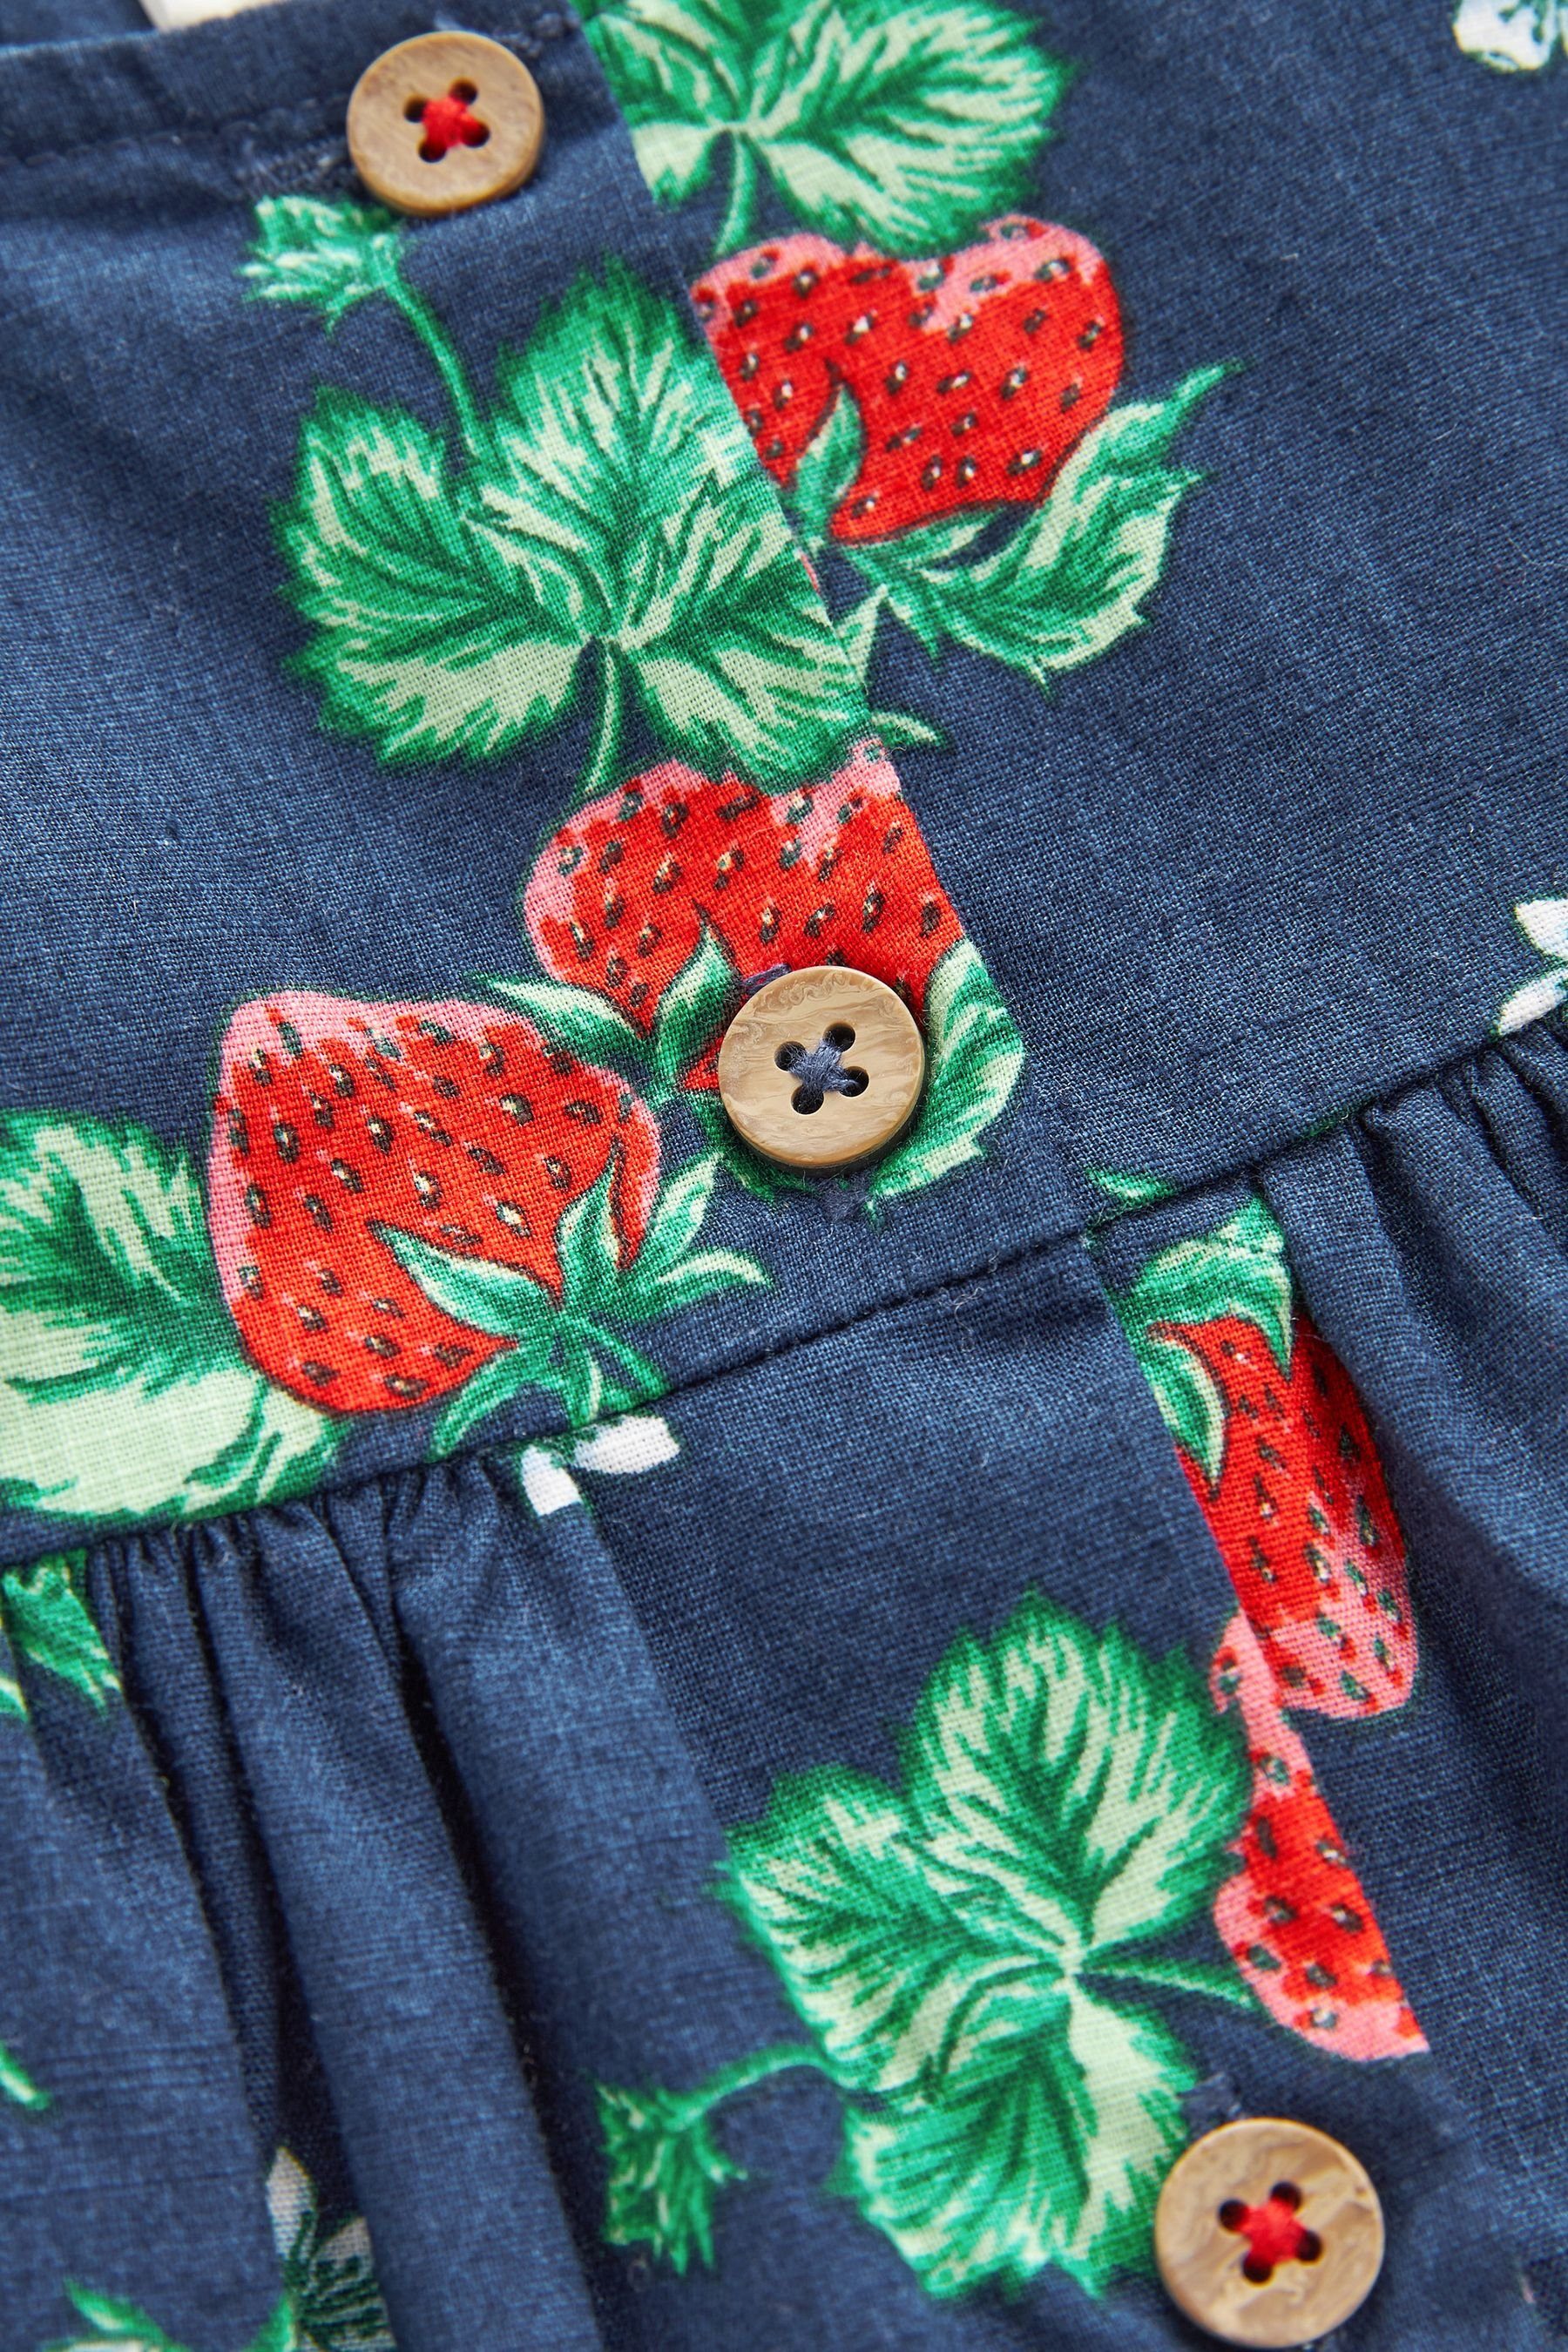 mit Blue Next Rüschenärmeln Strawberry (1-tlg) Navy Print Baumwollkleid Sommerkleid